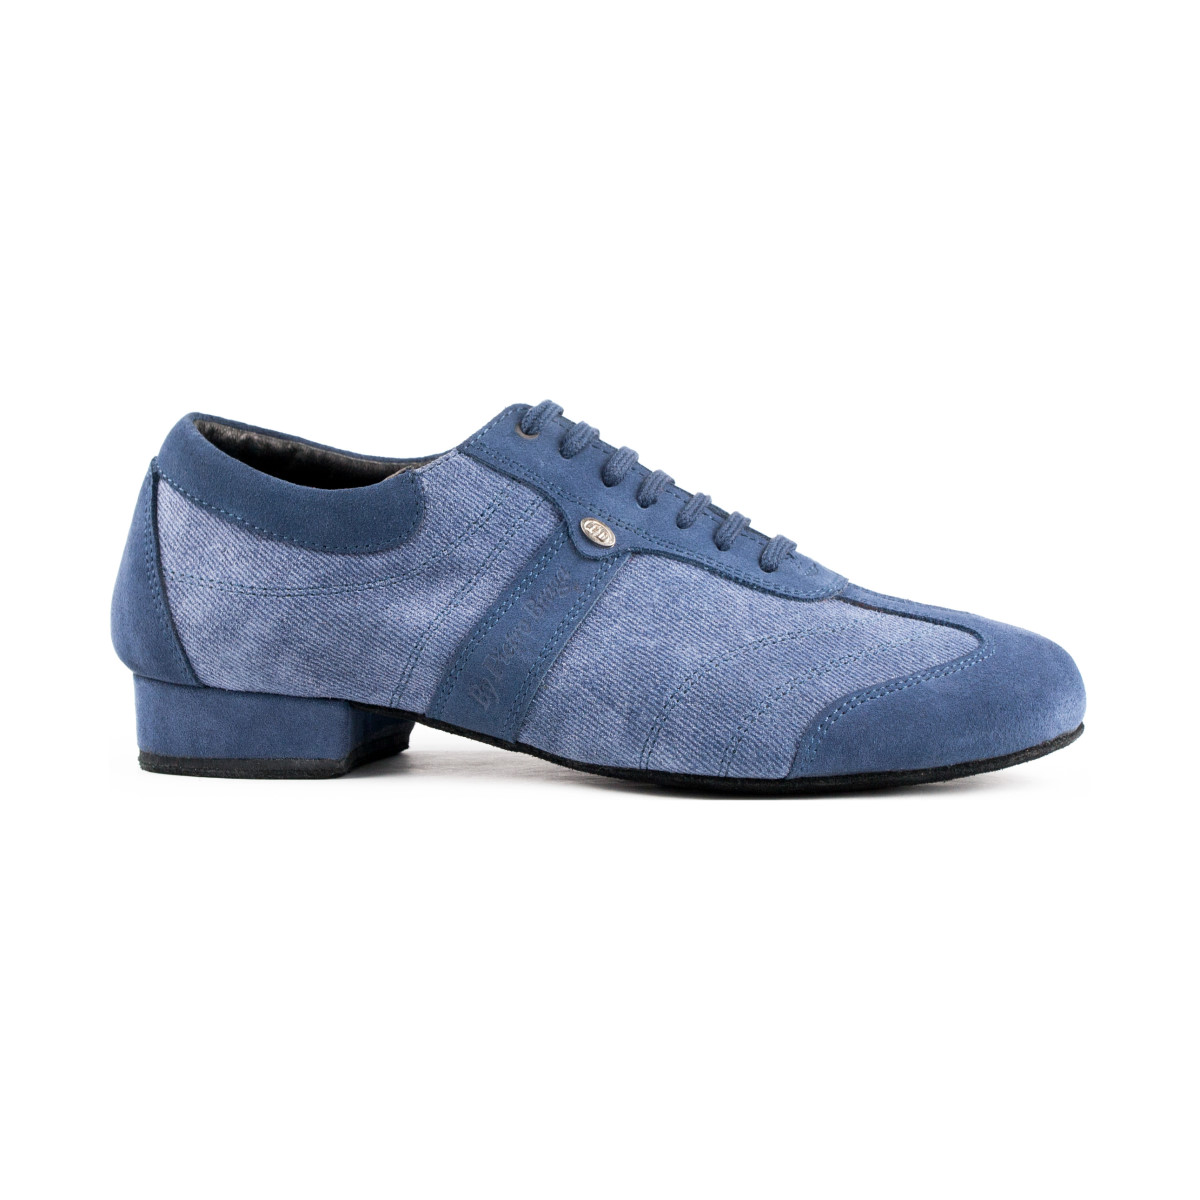 blue dance shoes